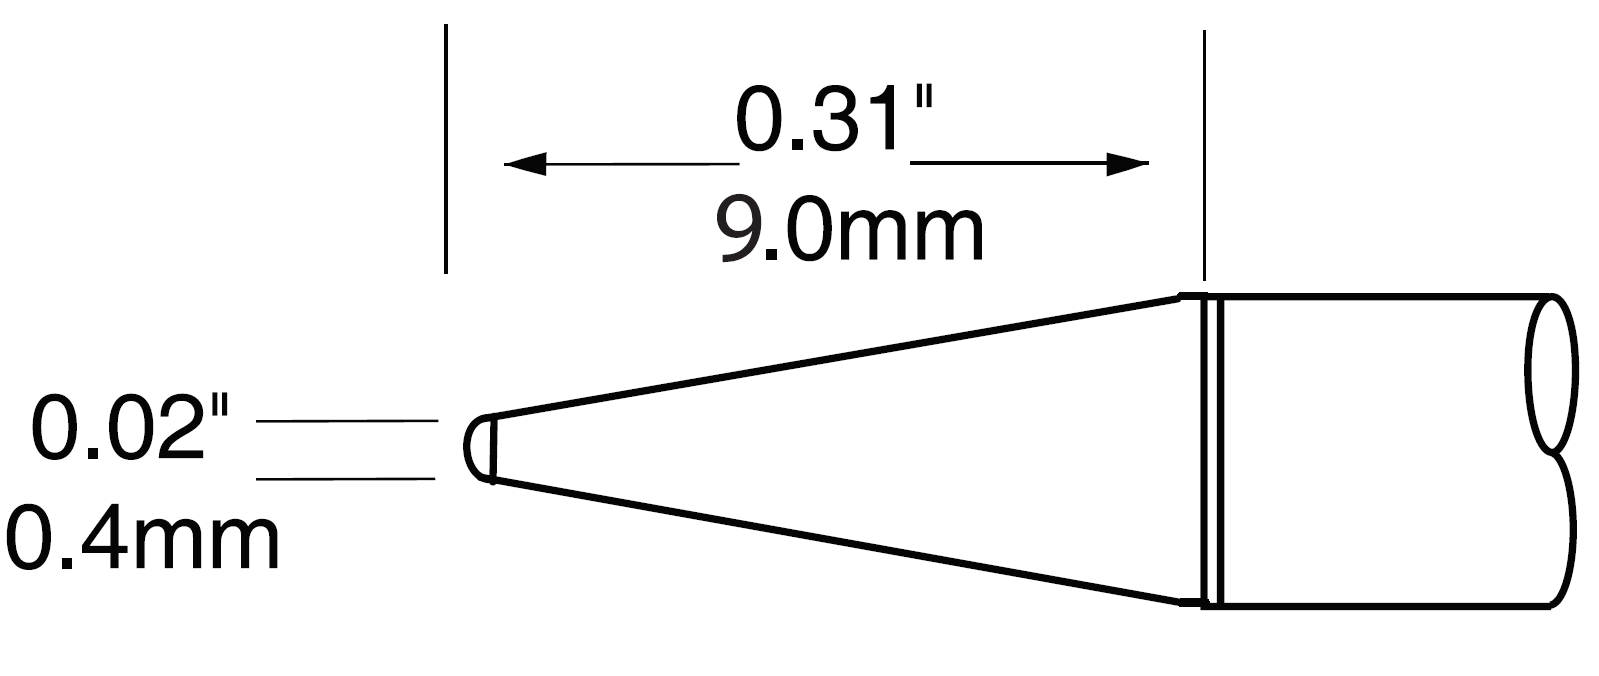 Картридж-наконечник для MX-UF, конус удлиненный, 0.4х9.0мм